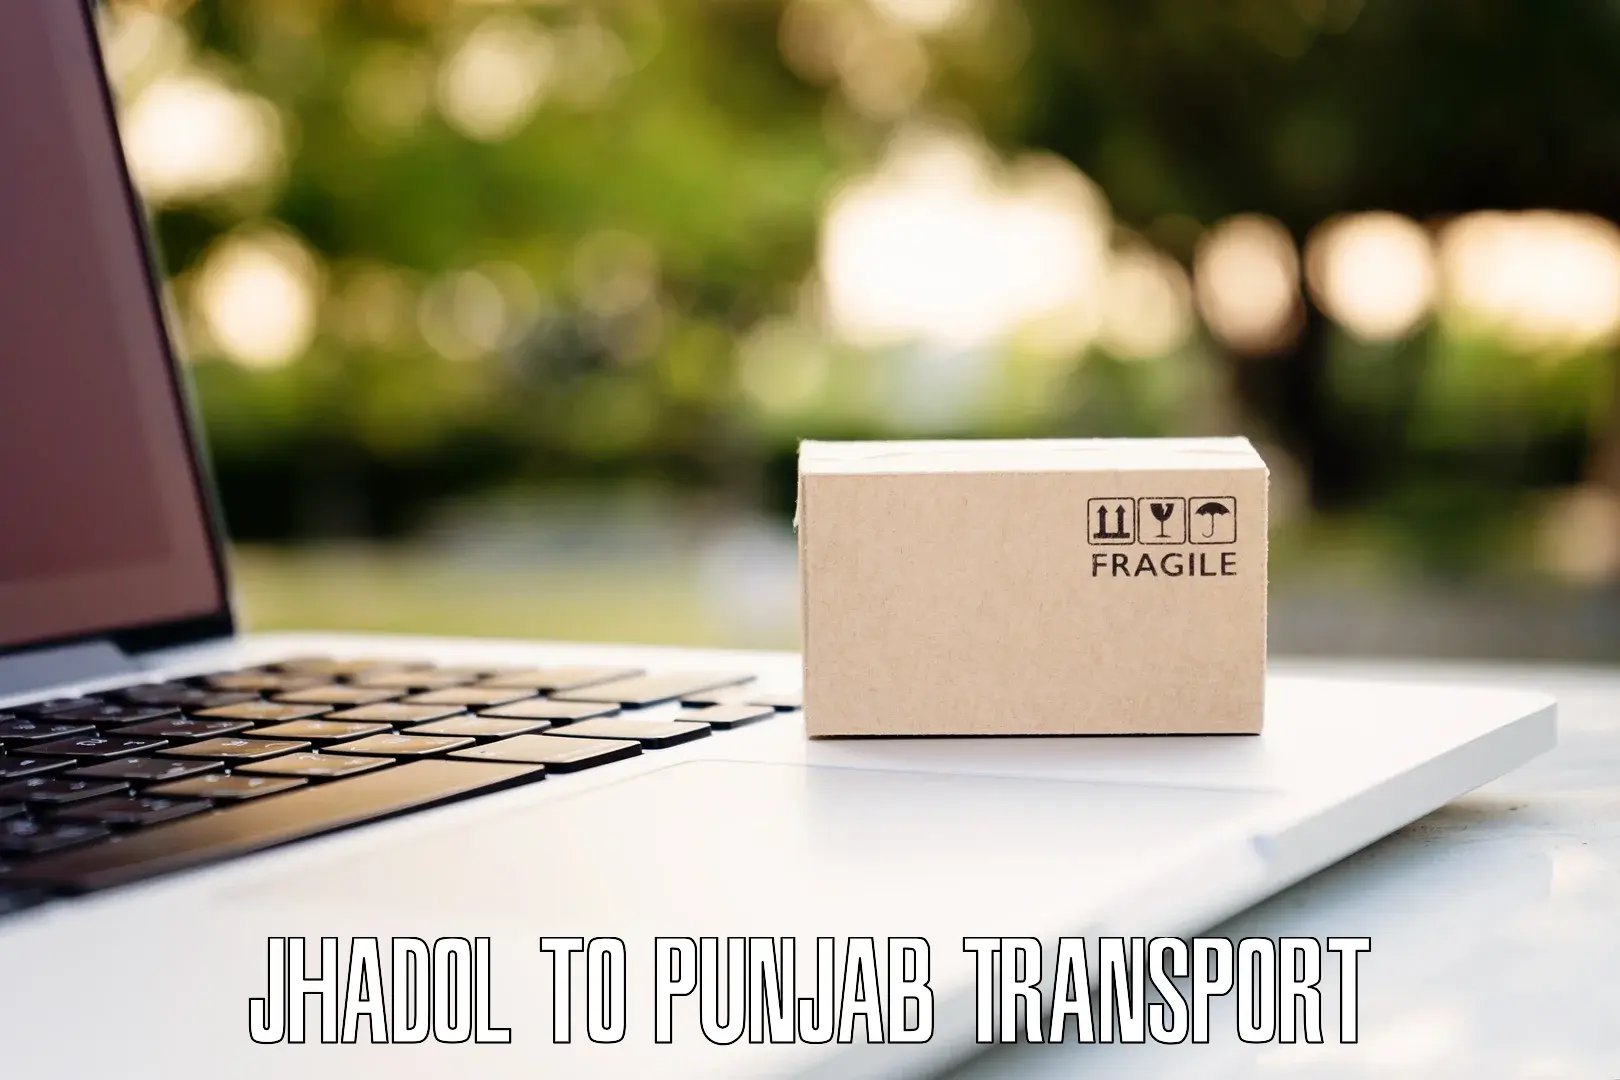 Online transport Jhadol to Sangrur